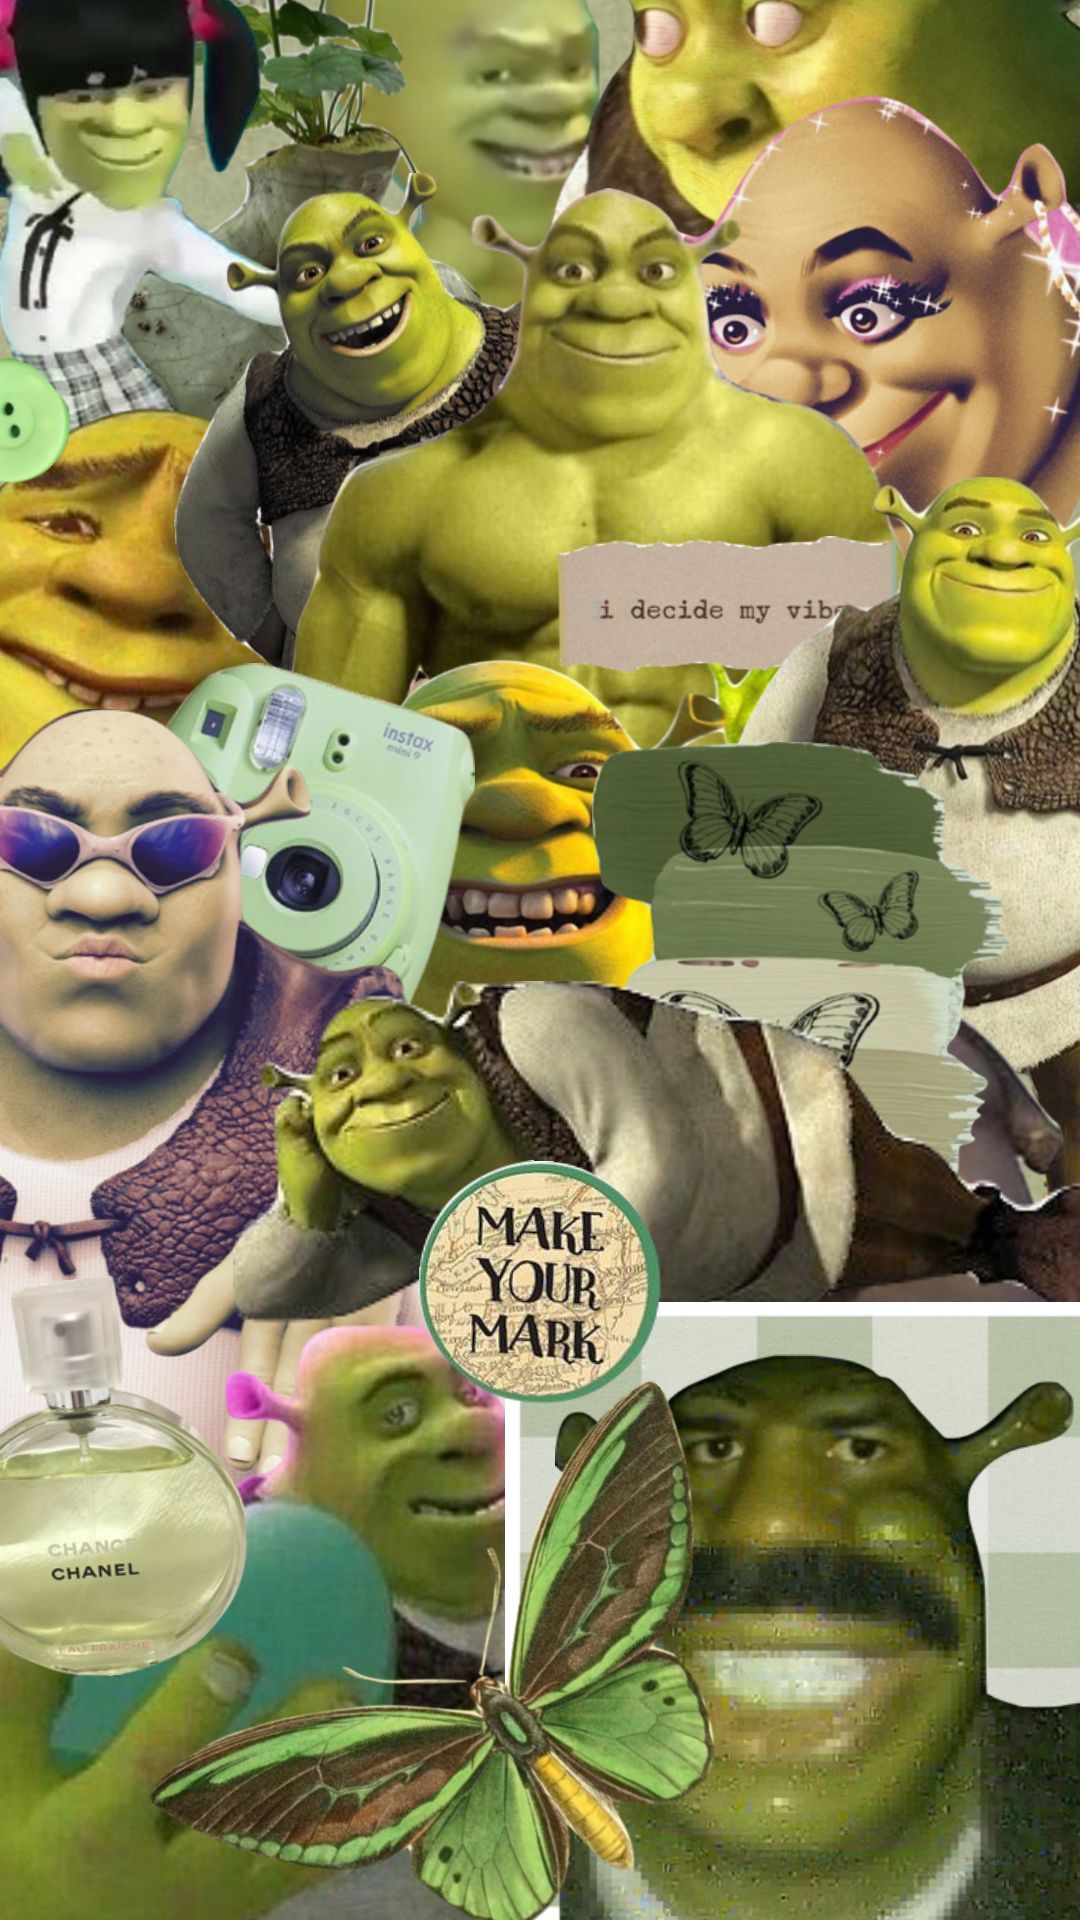 Shrek wallpaper for phone - Shrek